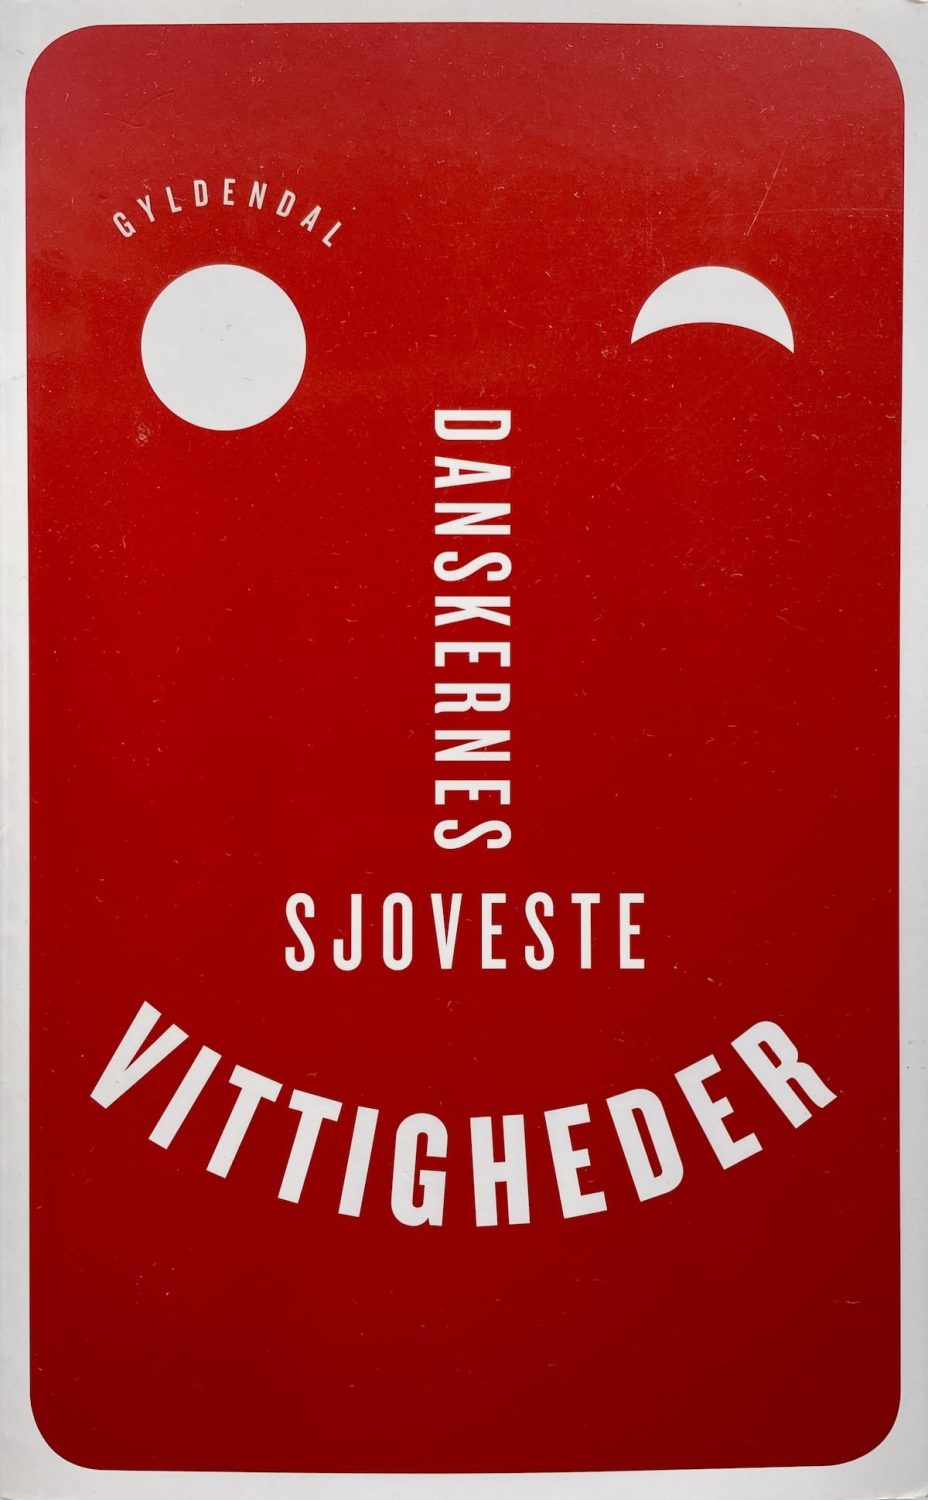 Danskernes sjoveste vittigheder, Povl Erik Carstensen & Thomas Wivel, brugt bog